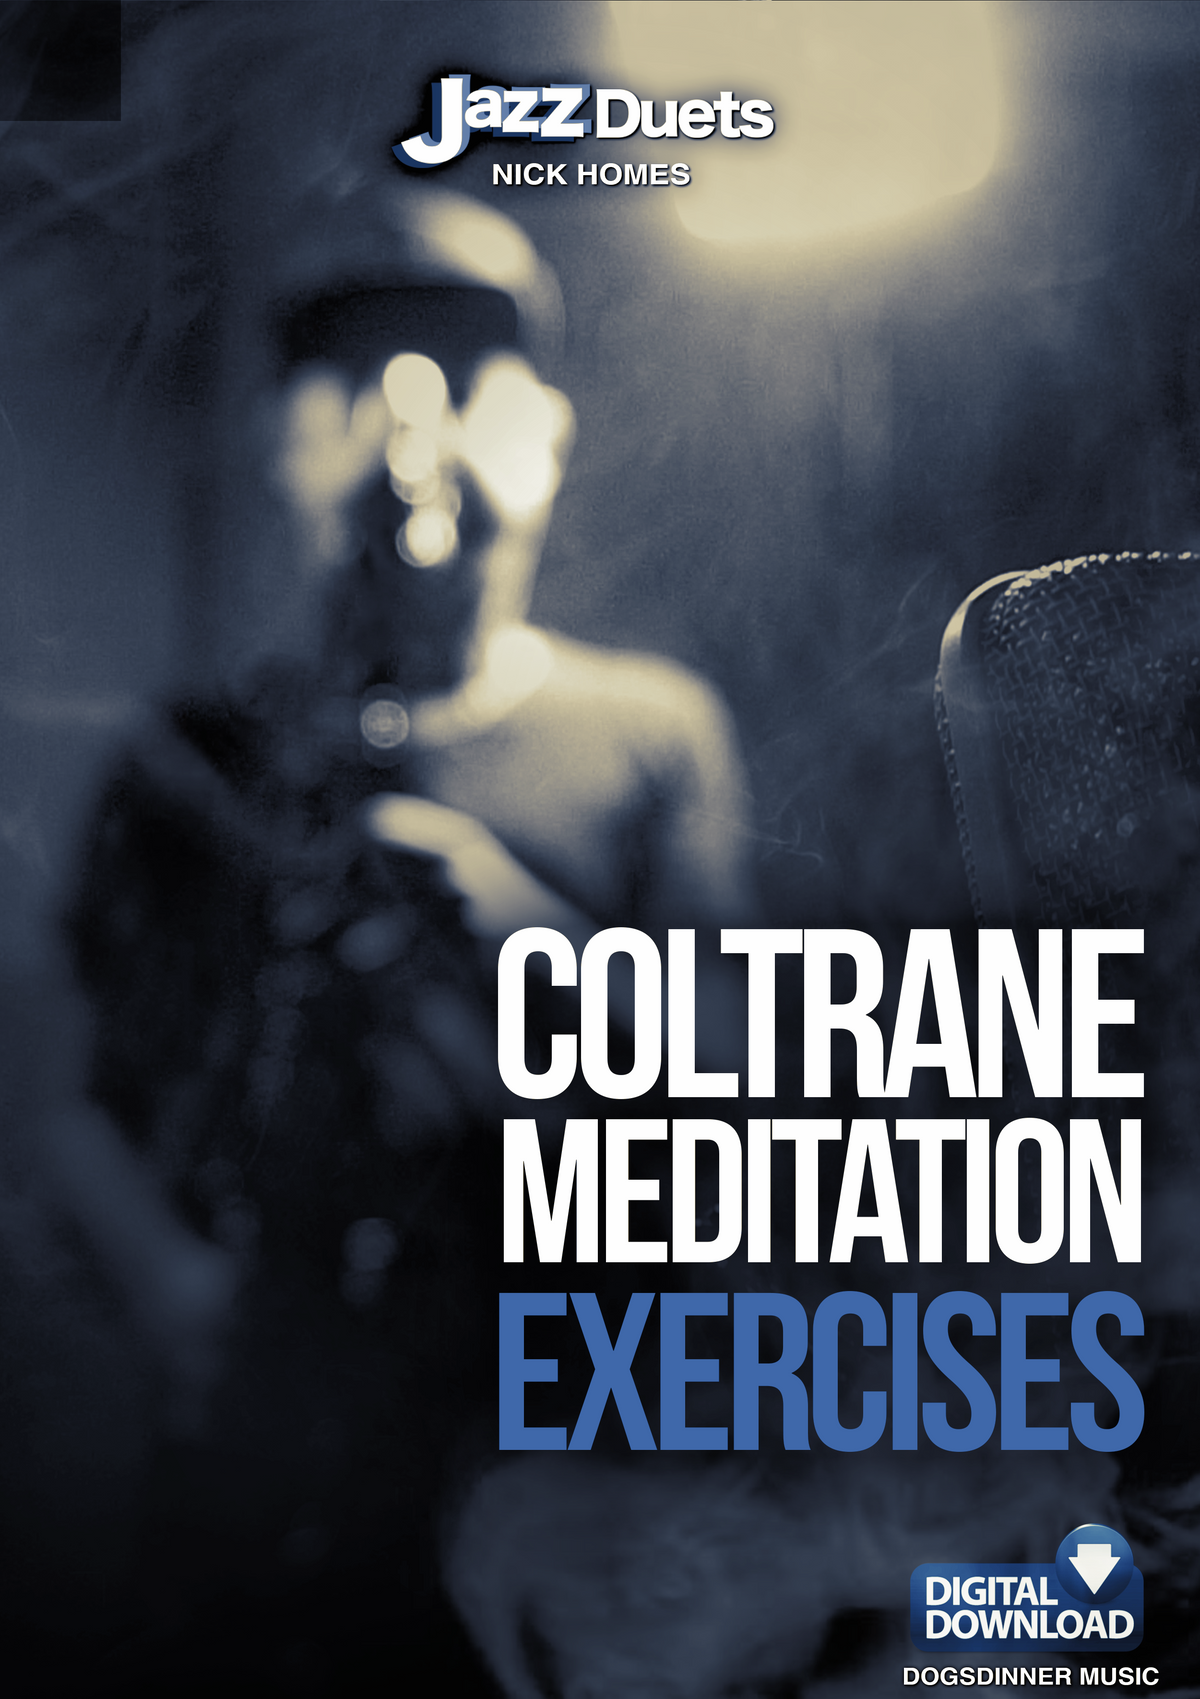 Coltrane &quot;Meditation&quot; exercise